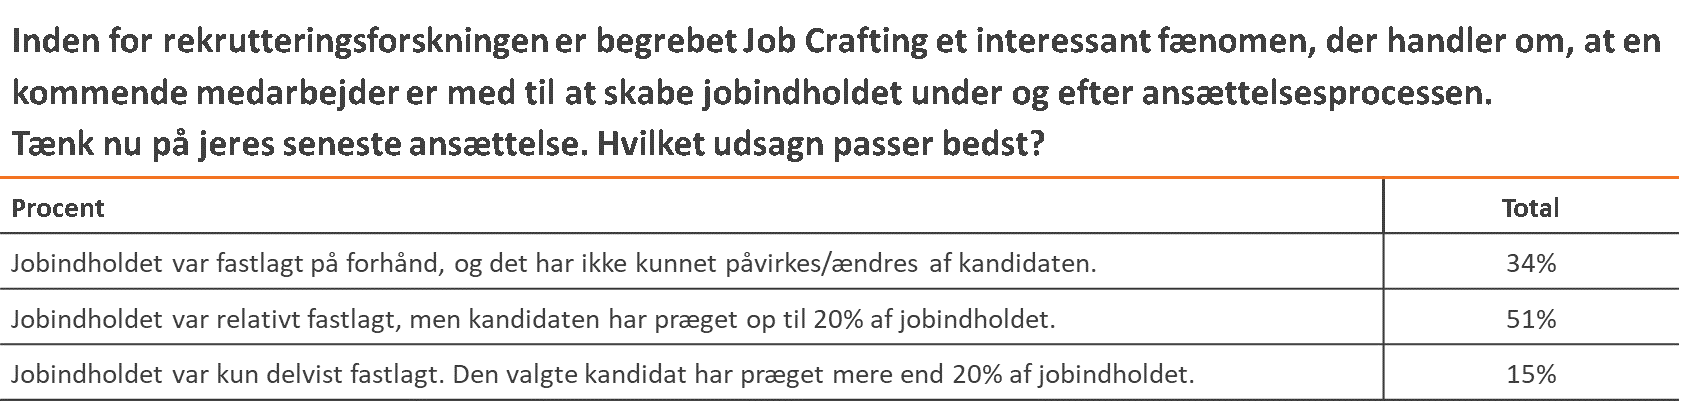 Job_crafting_Rekrutteringsanalysen_2019